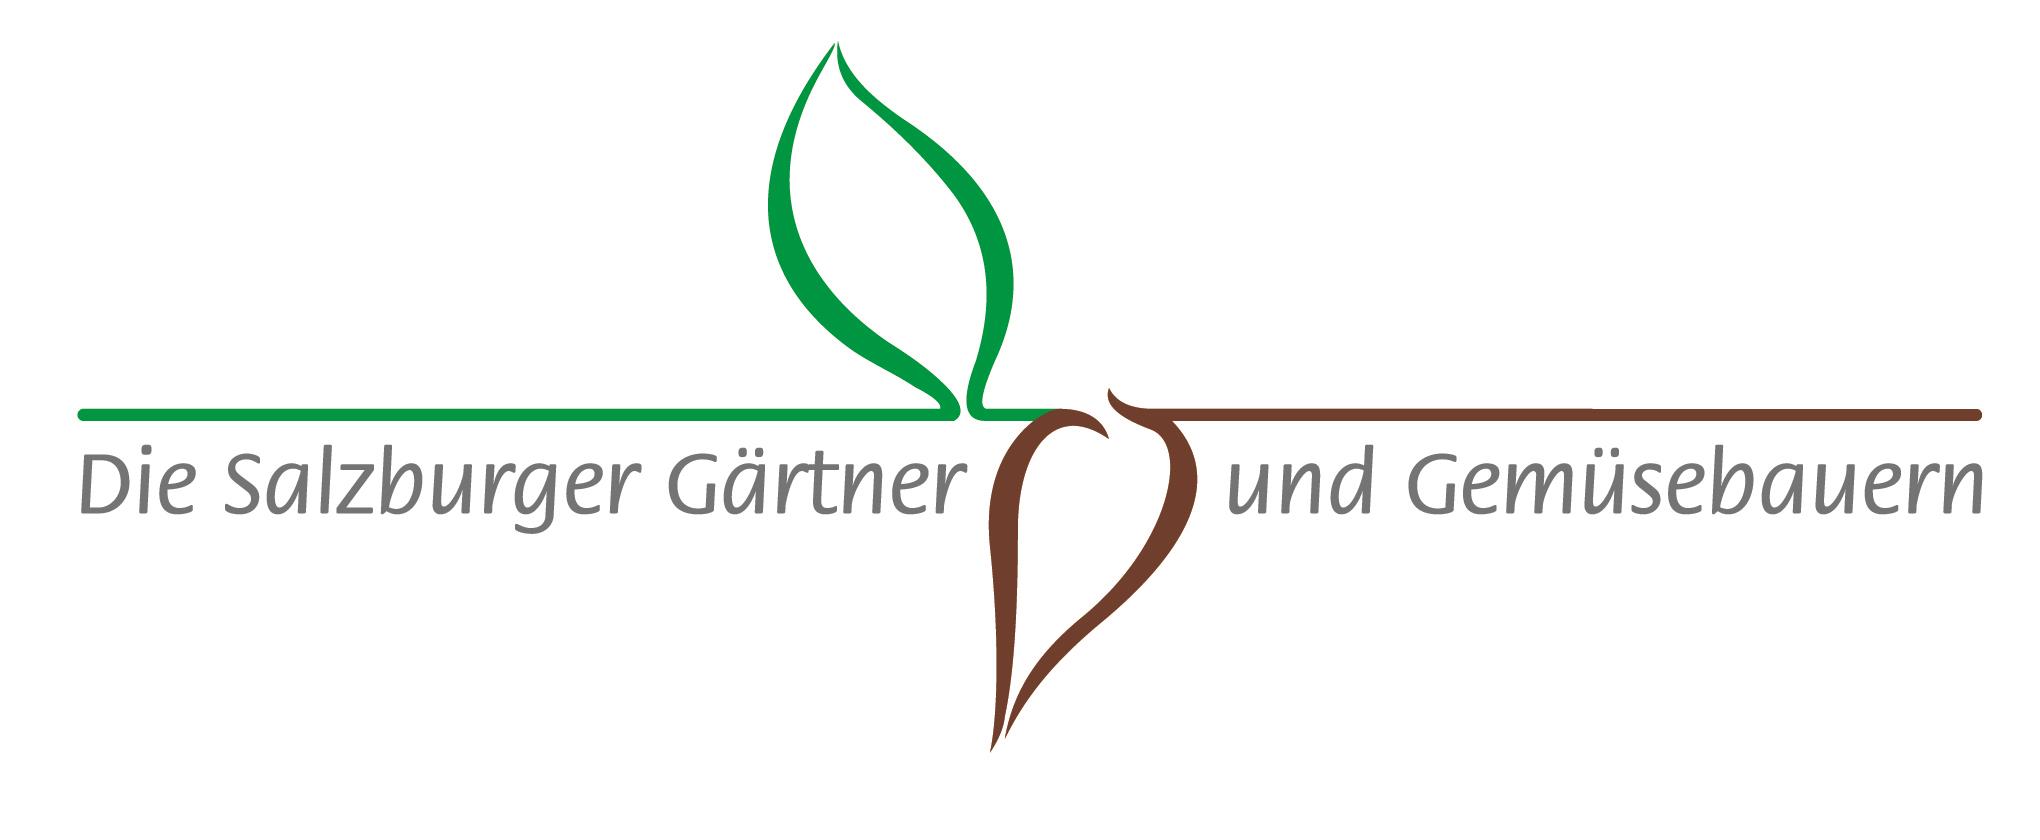 Die Salzburger Gärtner und Gemüsebauern